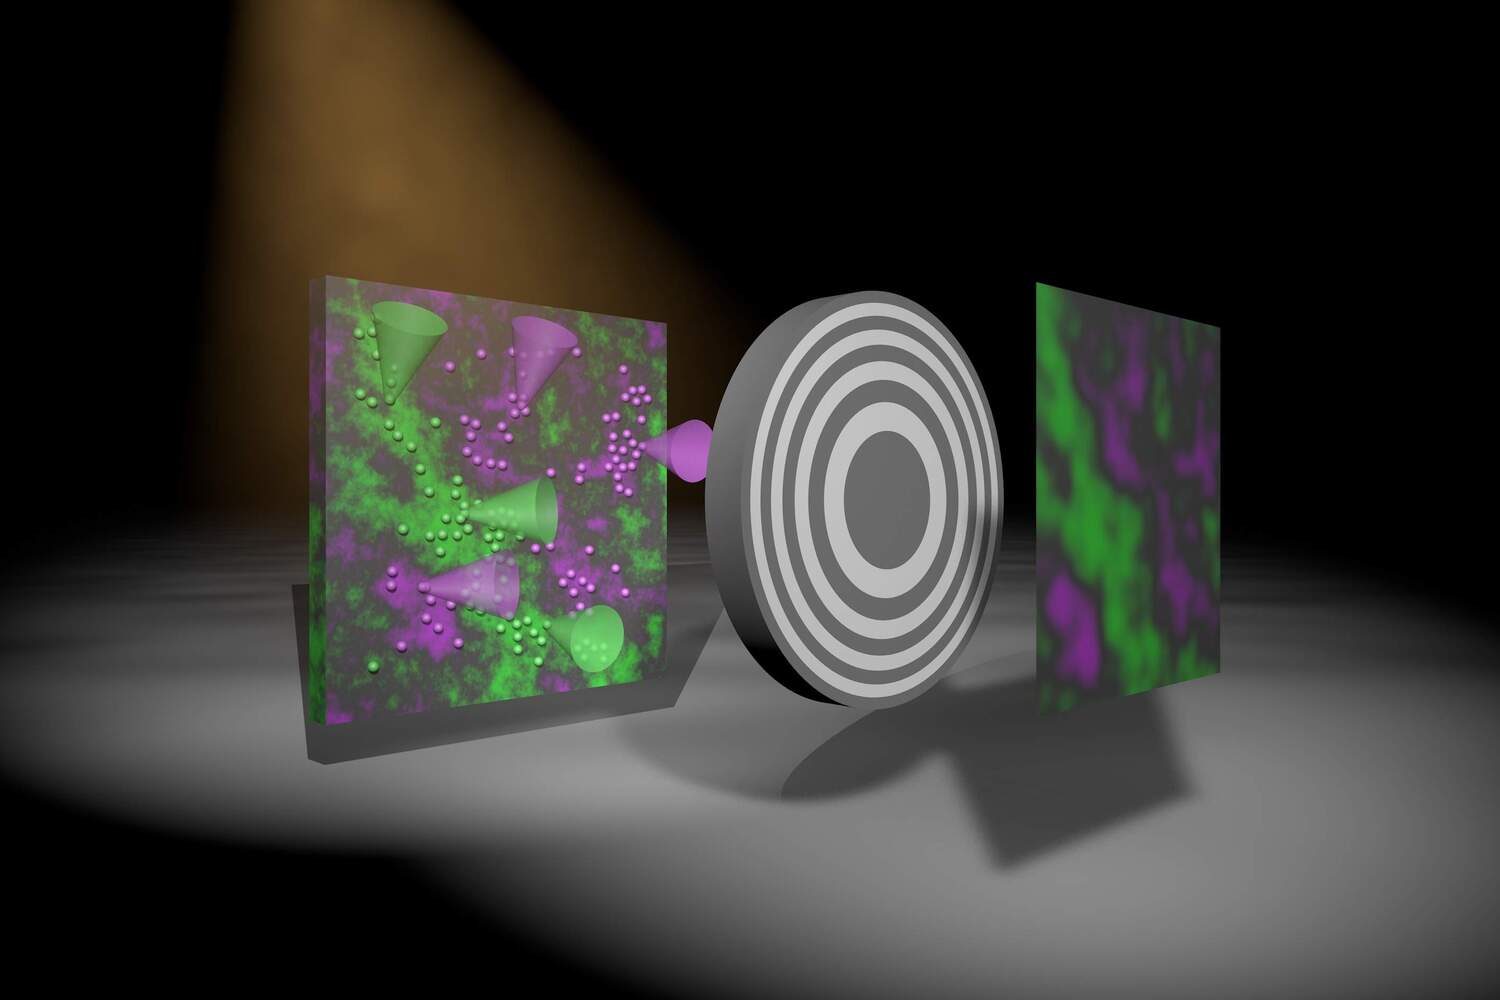 Künstlerische Darstellung, die zeigt, wie ein Bild mit der neu entwickelten Methode erzeugt wird. Die fluoreszierenden Atome in der Probe (links) emittieren aufgrund der Röntgenanregung zwei Farben, Grün und Magenta. Das graue runde Objekt stellt eine Optik dar, die einen Schatten auf den Detektor wirft. Der Algorithmus erzeugt dann ein tatsächliches Bild mit zwei Farben, deren Intensität die Dichte der fluoreszierenden Atome in der Probe darstellt.